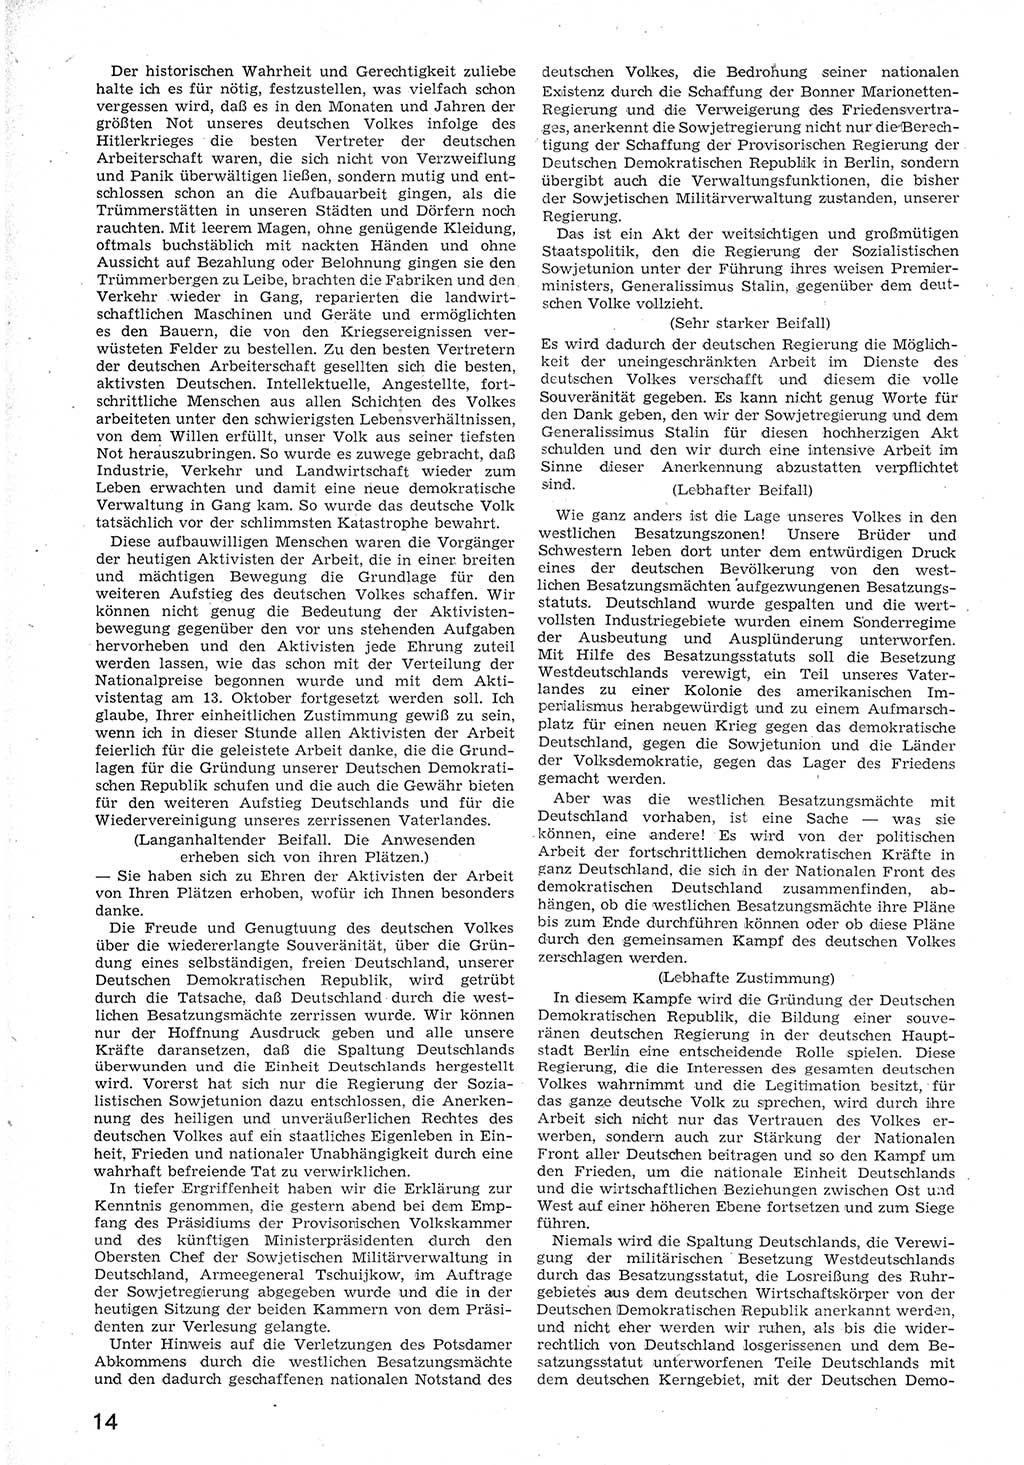 Provisorische Volkskammer (VK) der Deutschen Demokratischen Republik (DDR) 1949-1950, Dokument 26 (Prov. VK DDR 1949-1950, Dok. 26)